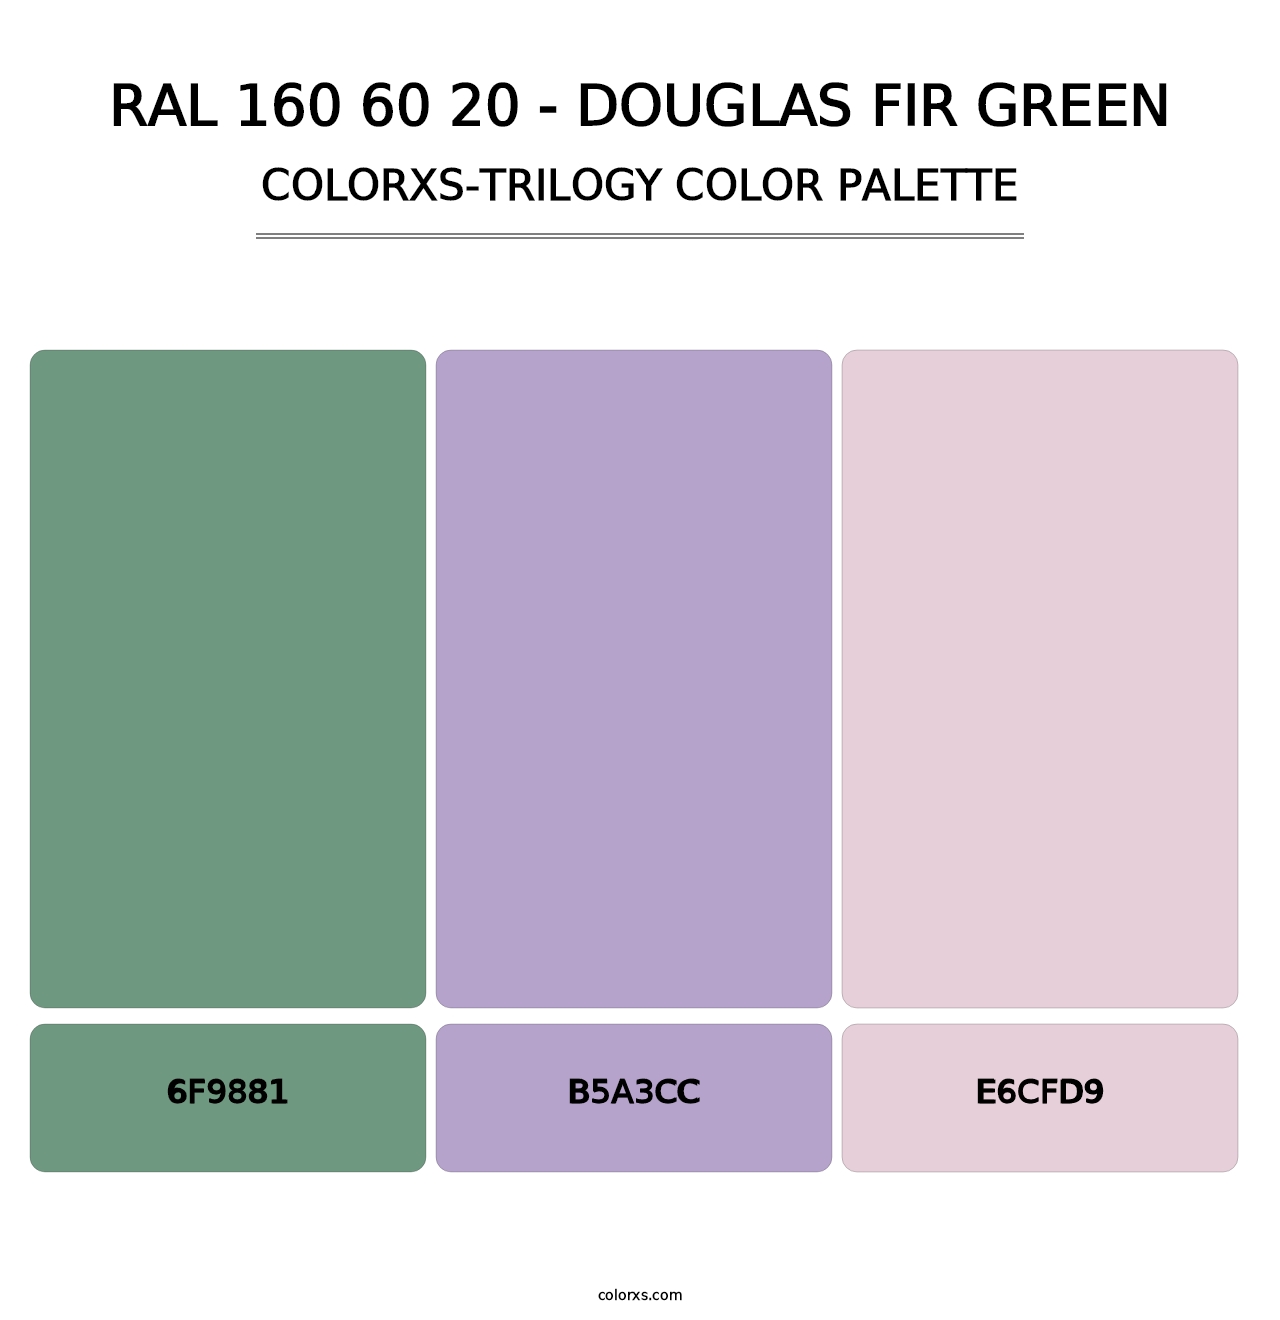 RAL 160 60 20 - Douglas Fir Green - Colorxs Trilogy Palette